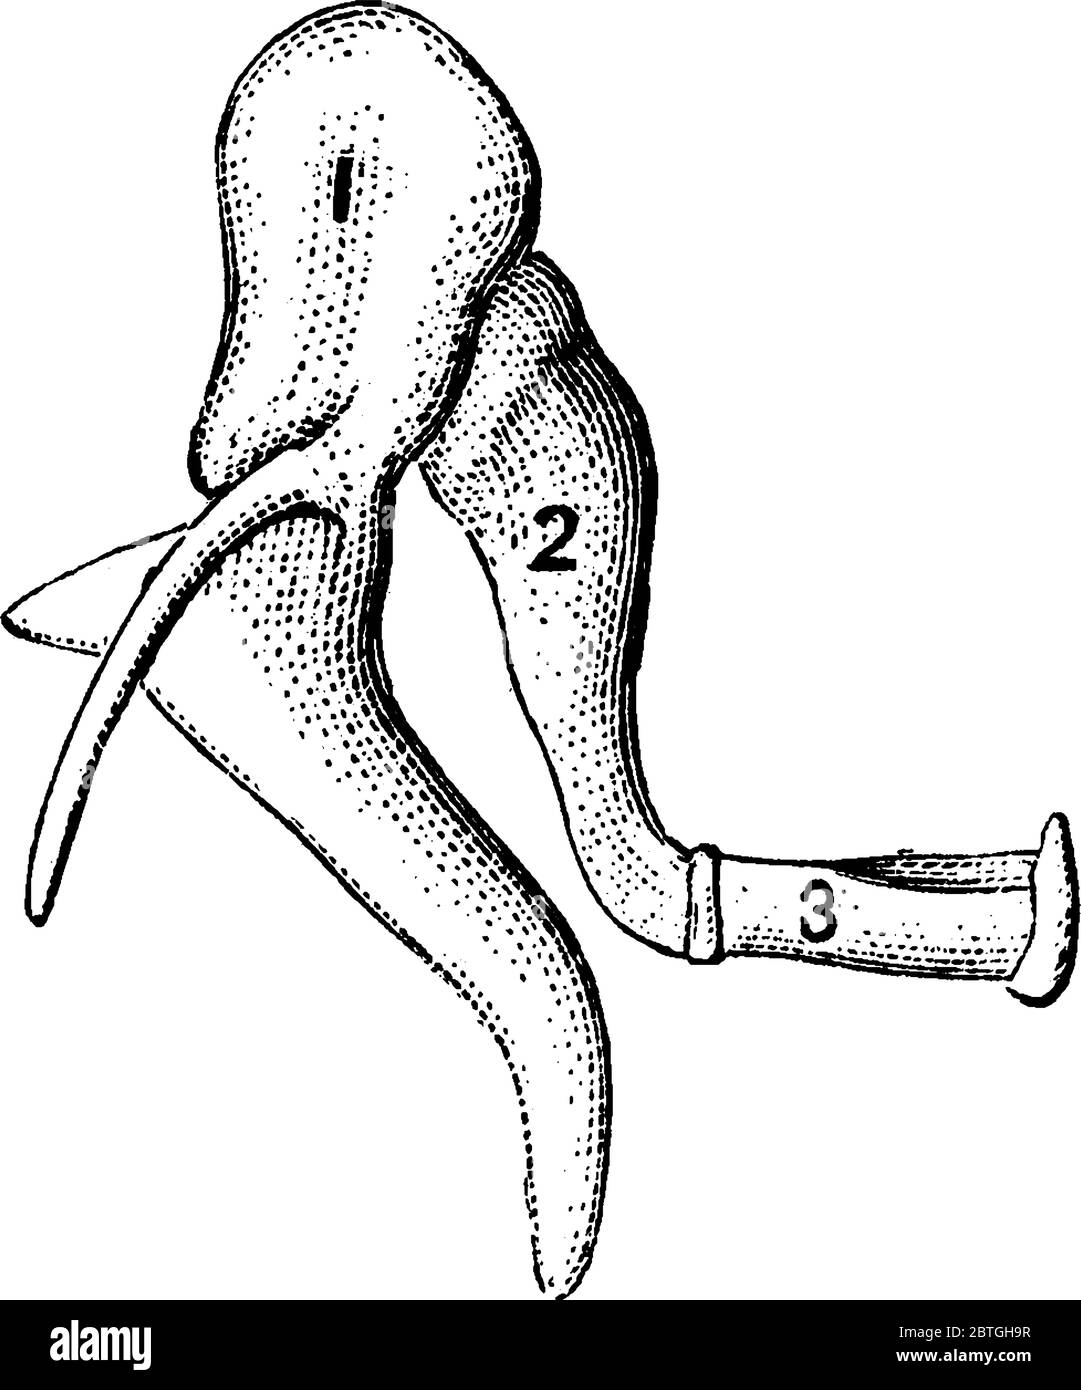 Le ossa dell'orecchio umano, che mostrano le parti, 1, malleus, o martello;  2, incus, o incudine e 3, stapes, o staffa, disegno di linea vintage o  incisione Immagine e Vettoriale - Alamy